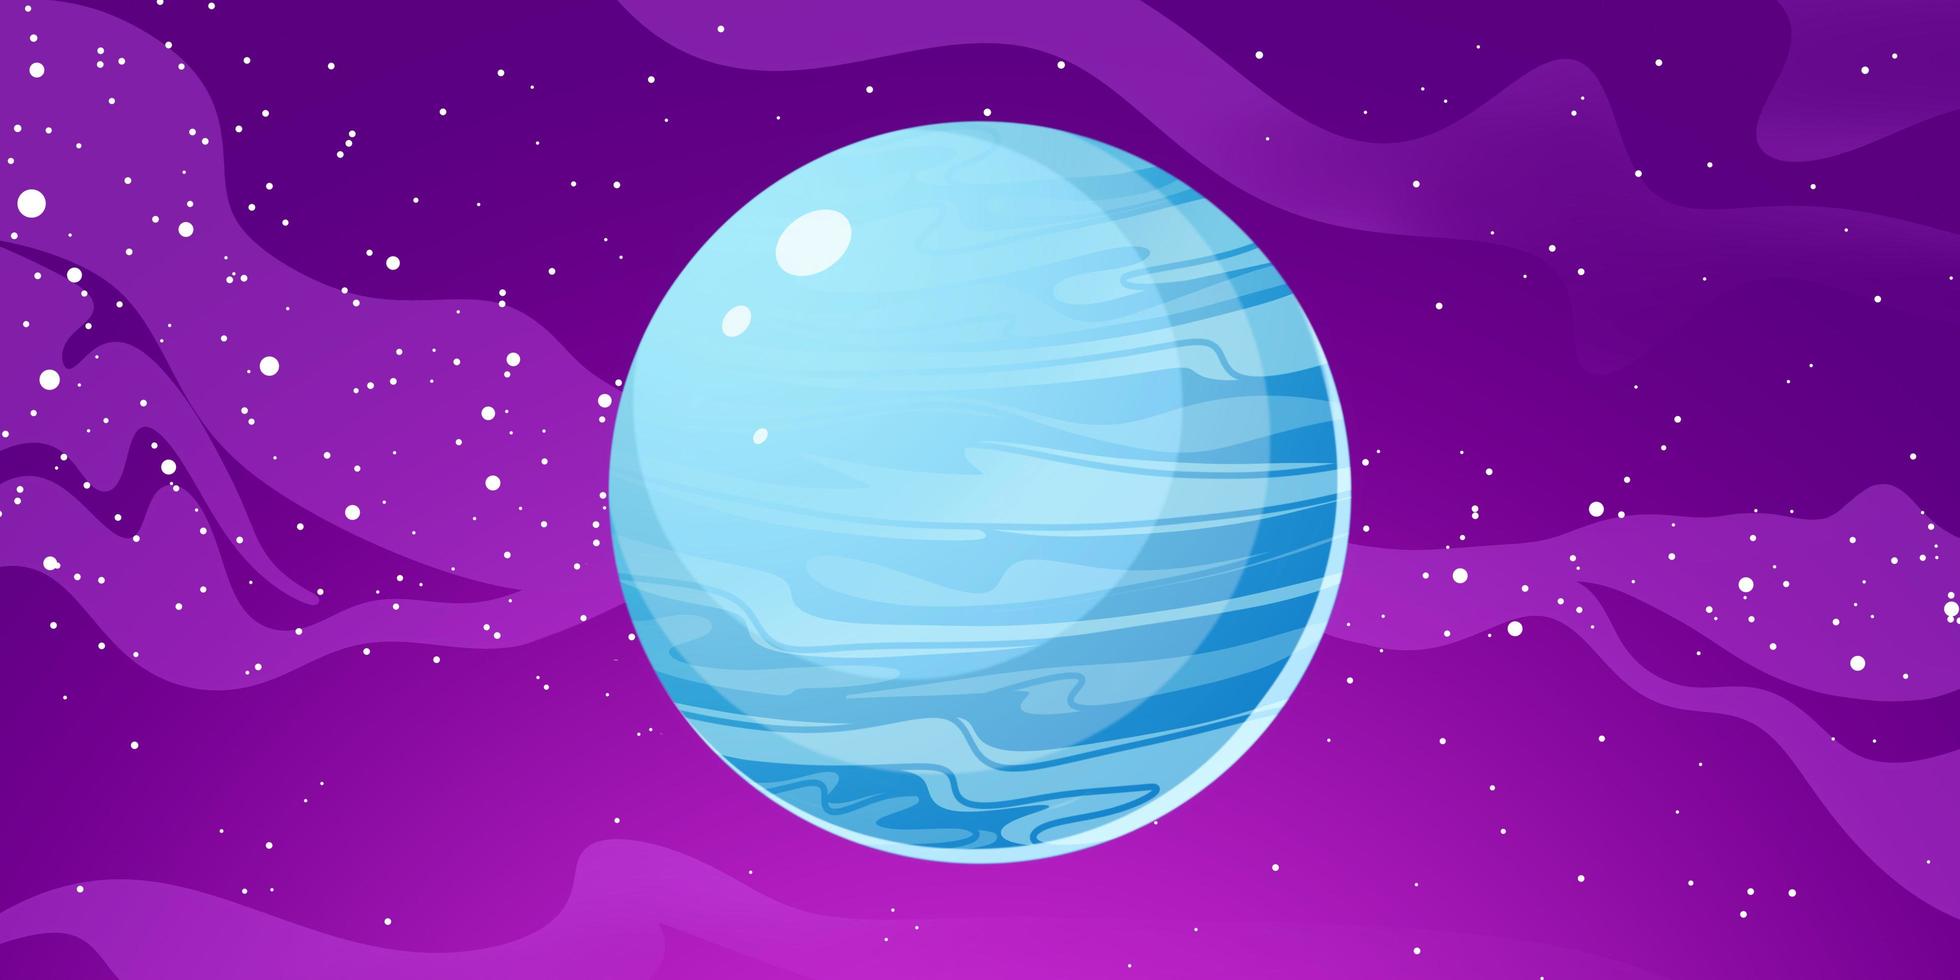 illustrazione del pianeta Urano. urano è il settimo pianeta dal sole foto